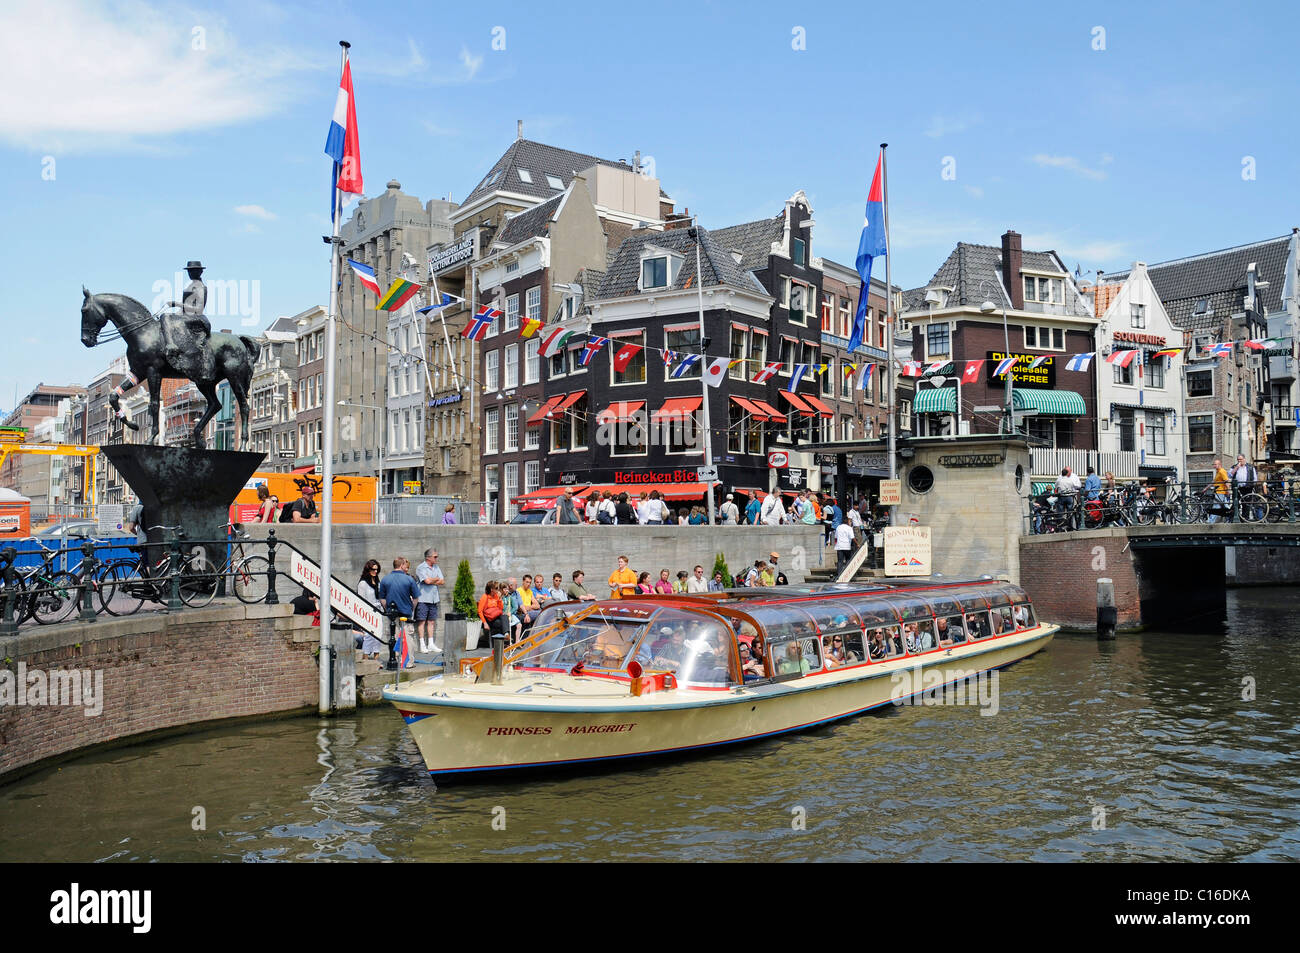 Monument équestre, la reine Wilhelmine, dock, visite de la ville, canal, bateaux, Amsterdam, Hollande, Pays-Bas, Europe Banque D'Images